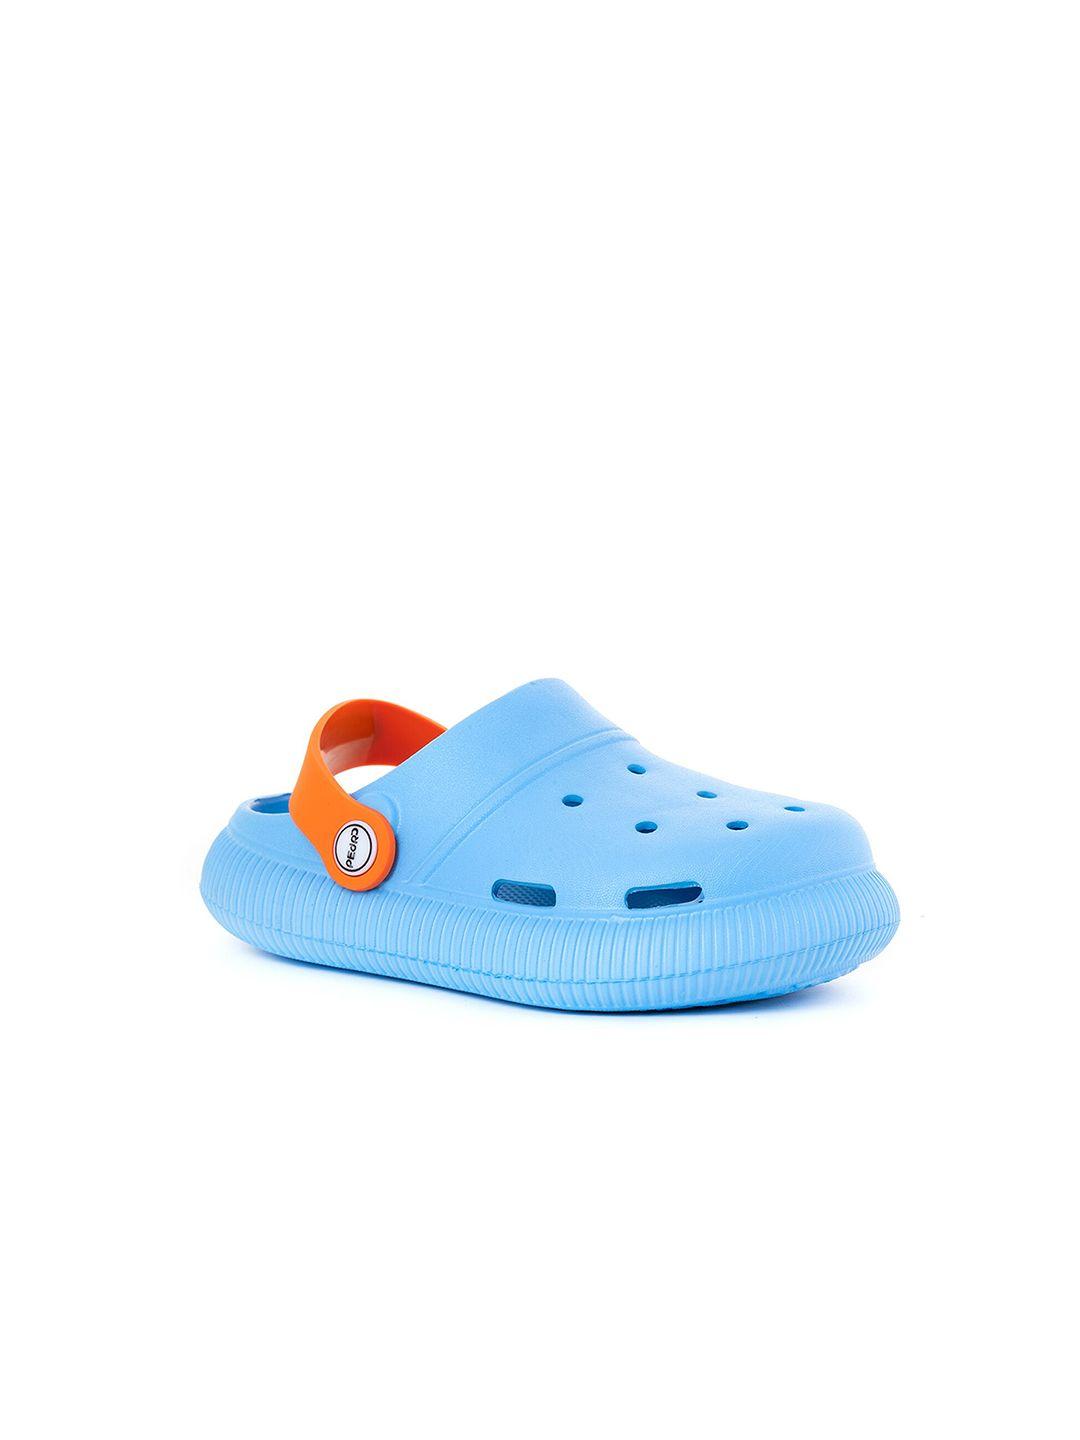 khadims-boys-blue-&-orange-clogs-sandals